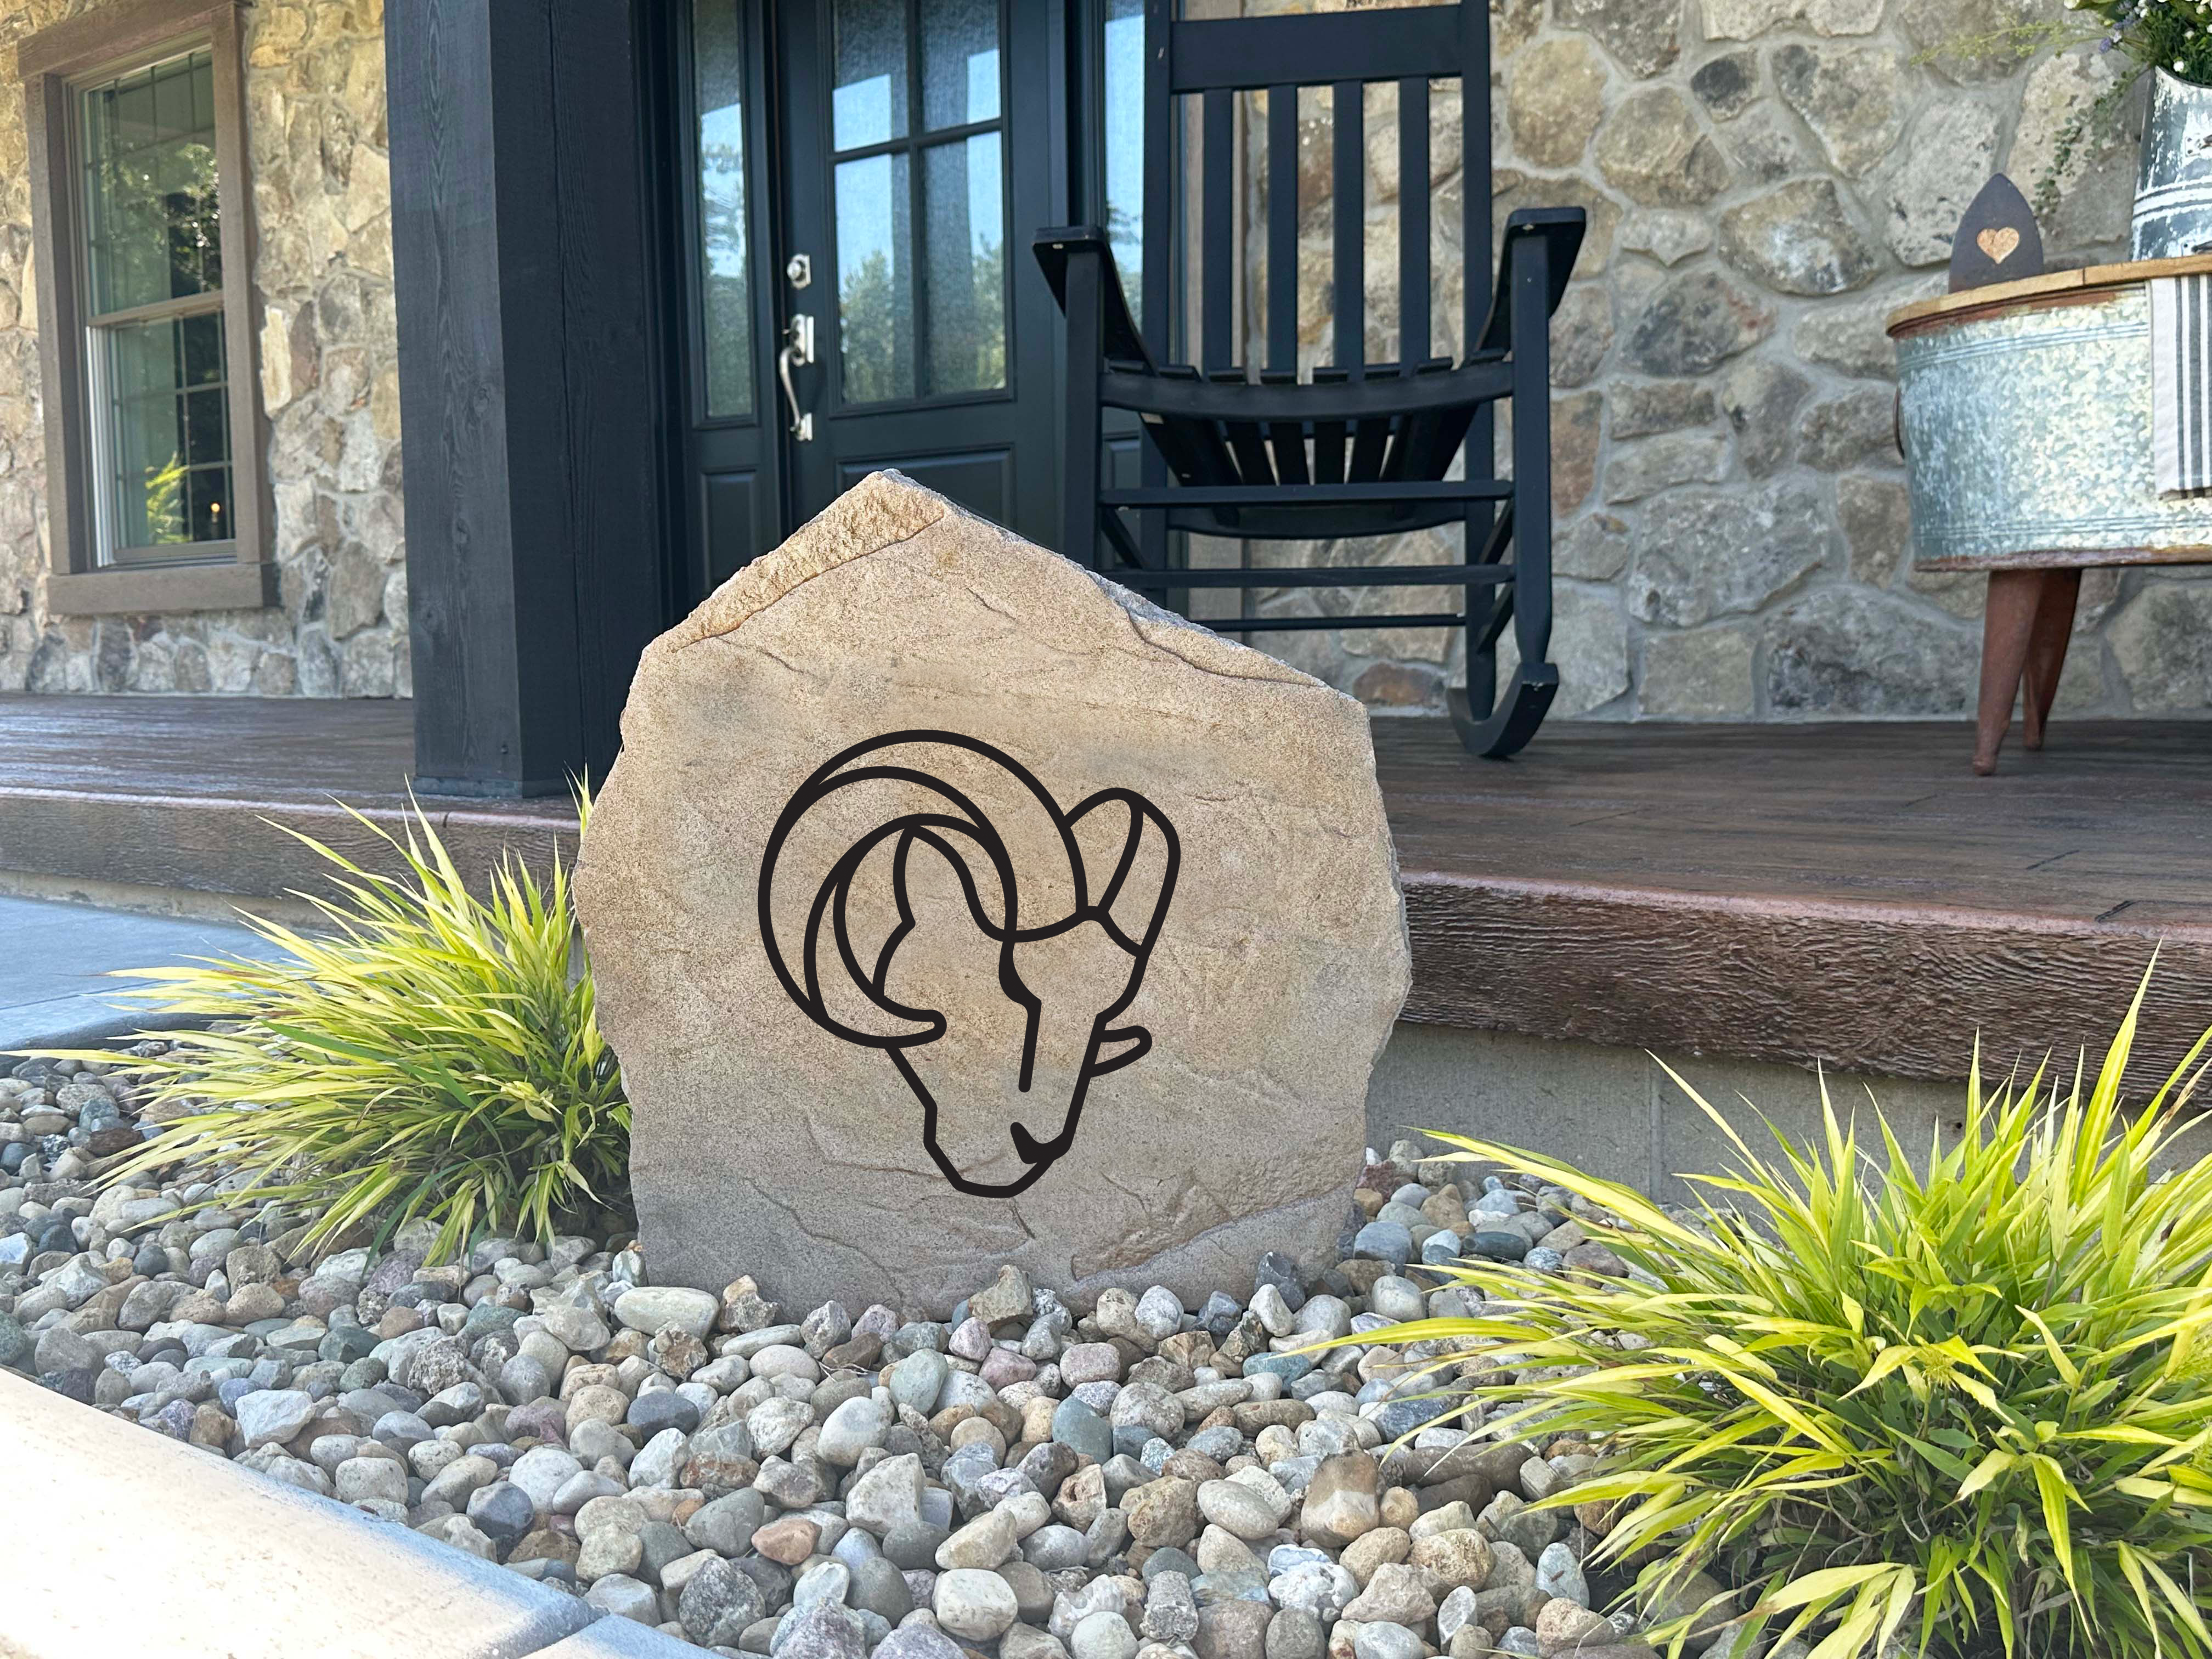 Los Angeles Rams Design-A-Stone Landscape Art